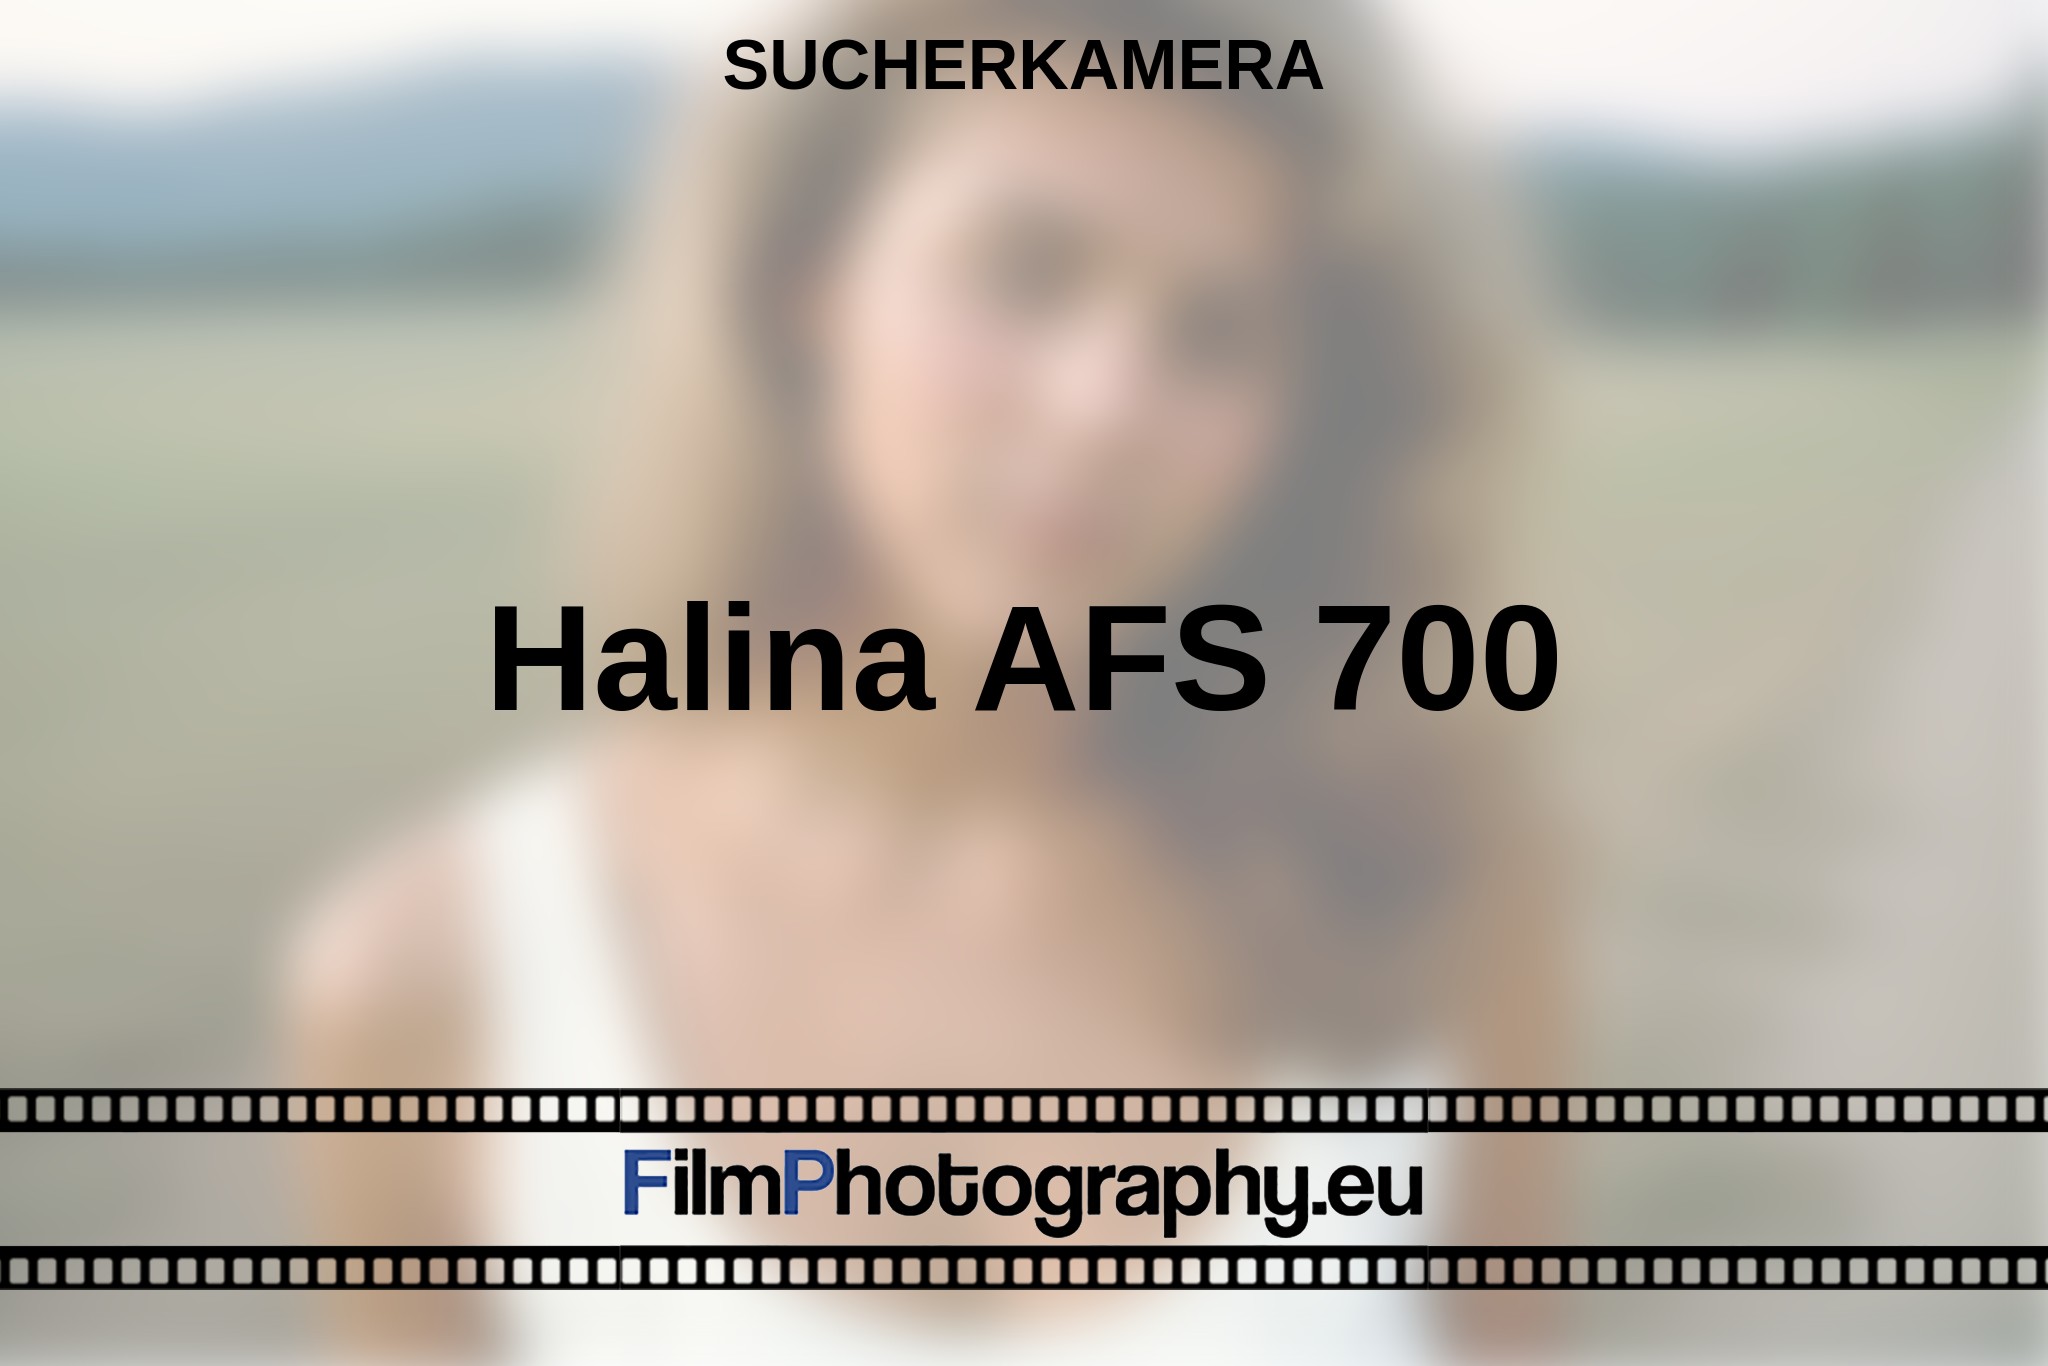 halina-afs-700-sucherkamera-bnv.jpg